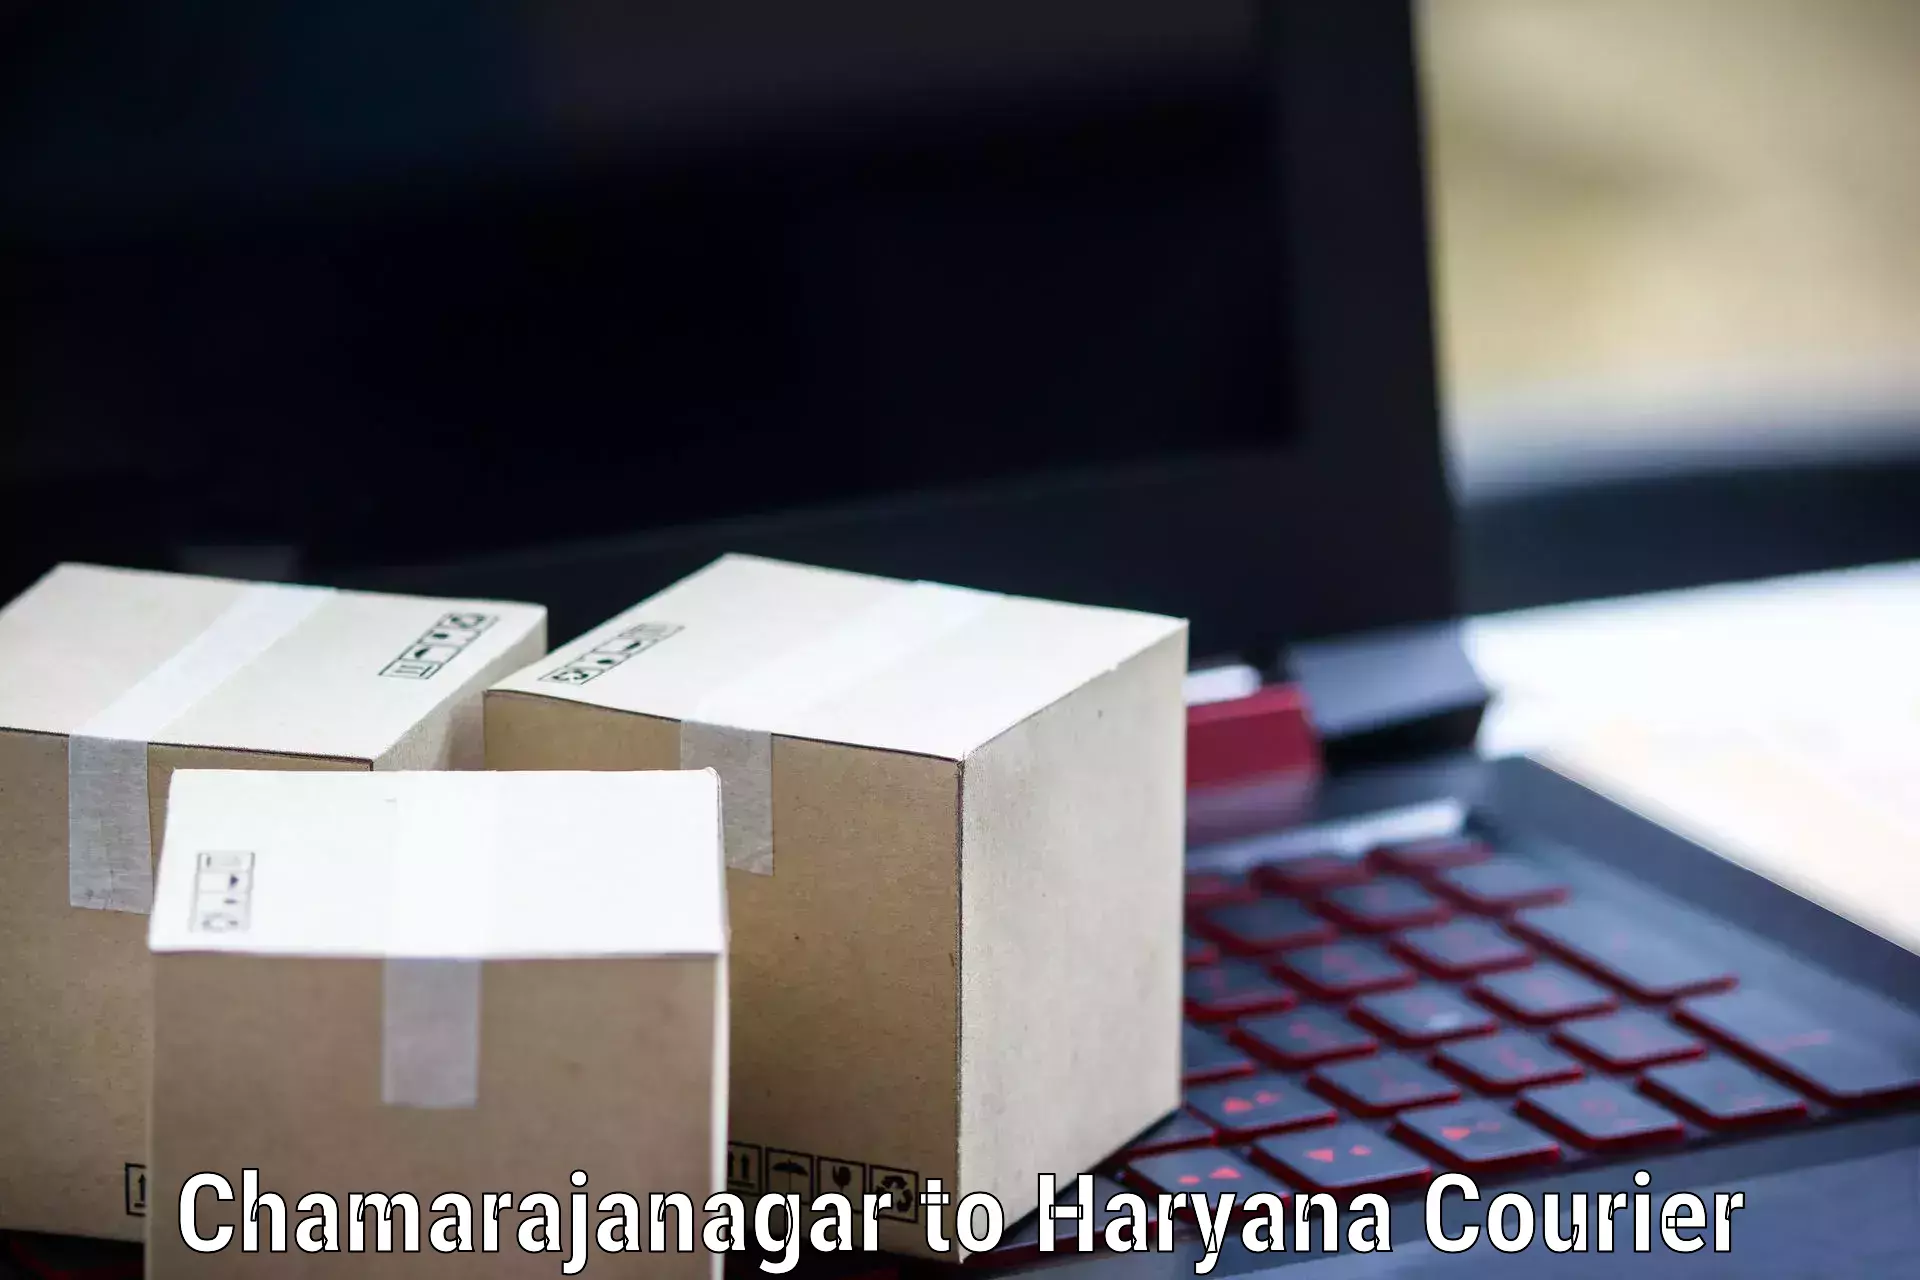 Business shipping needs Chamarajanagar to Jhajjar